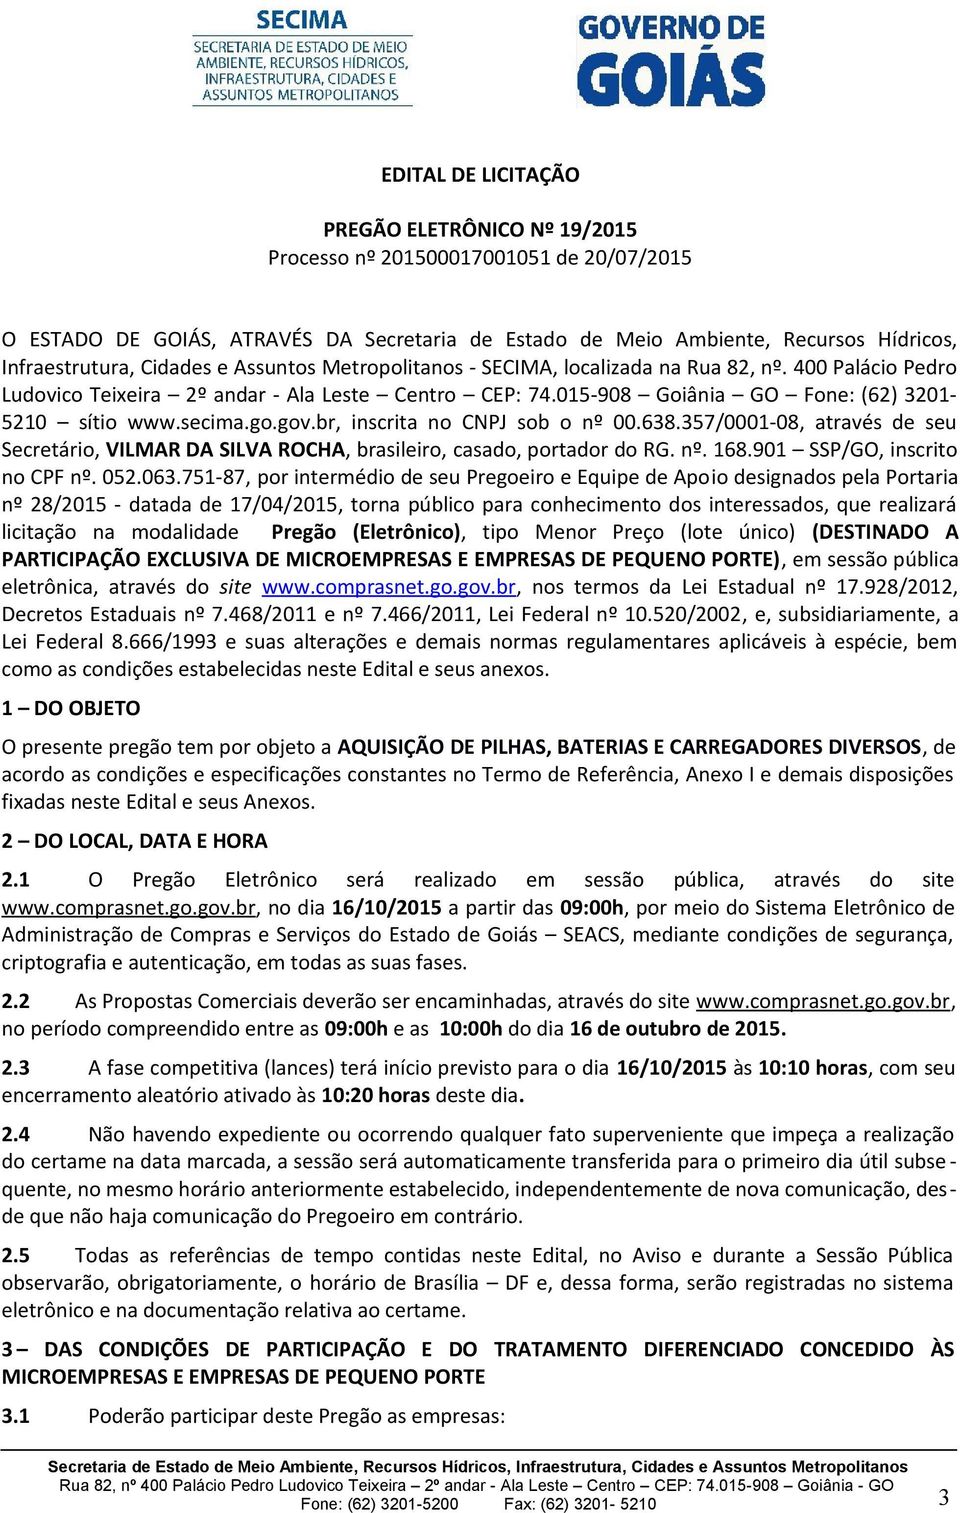 go.gov.br, inscrita no CNPJ sob o nº 00.638.357/0001-08, através de seu Secretário, VILMAR DA SILVA ROCHA, brasileiro, casado, portador do RG. nº. 168.901 SSP/GO, inscrito no CPF nº. 052.063.